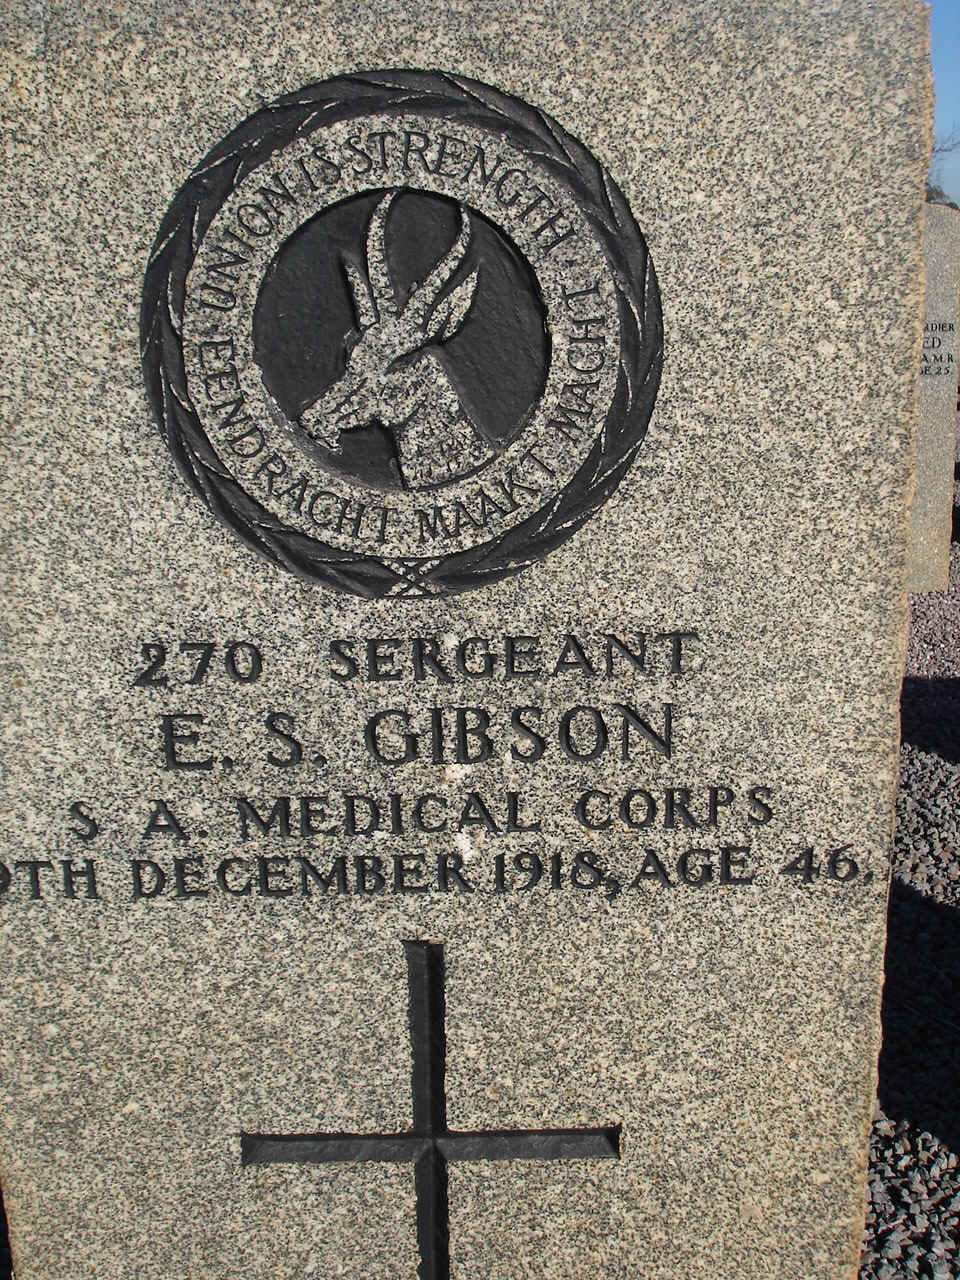 GIBSON E.S. -1918